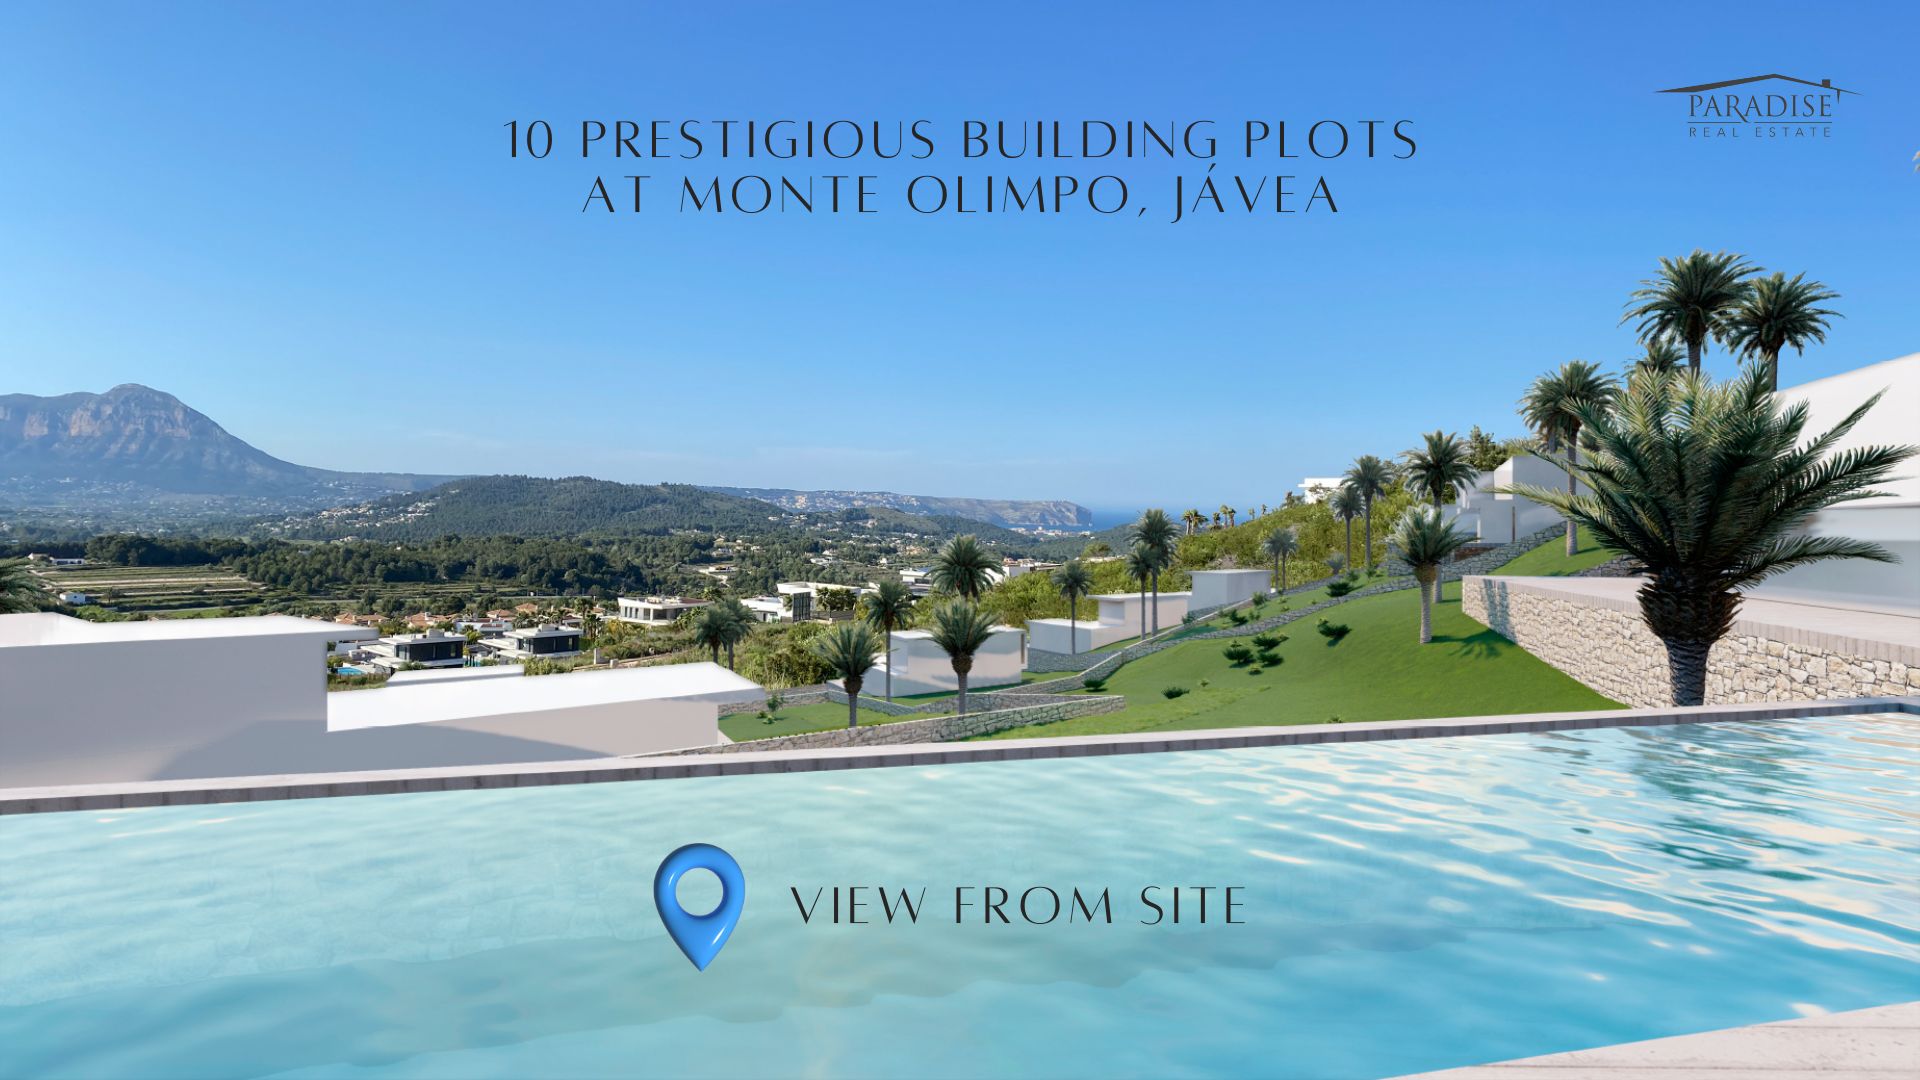 Monte Olimpo Baugrundstücke: Gestalten Sie Ihr Traumhaus und investieren Sie in exklusive Immobilien 0Preise ab €525k - €730